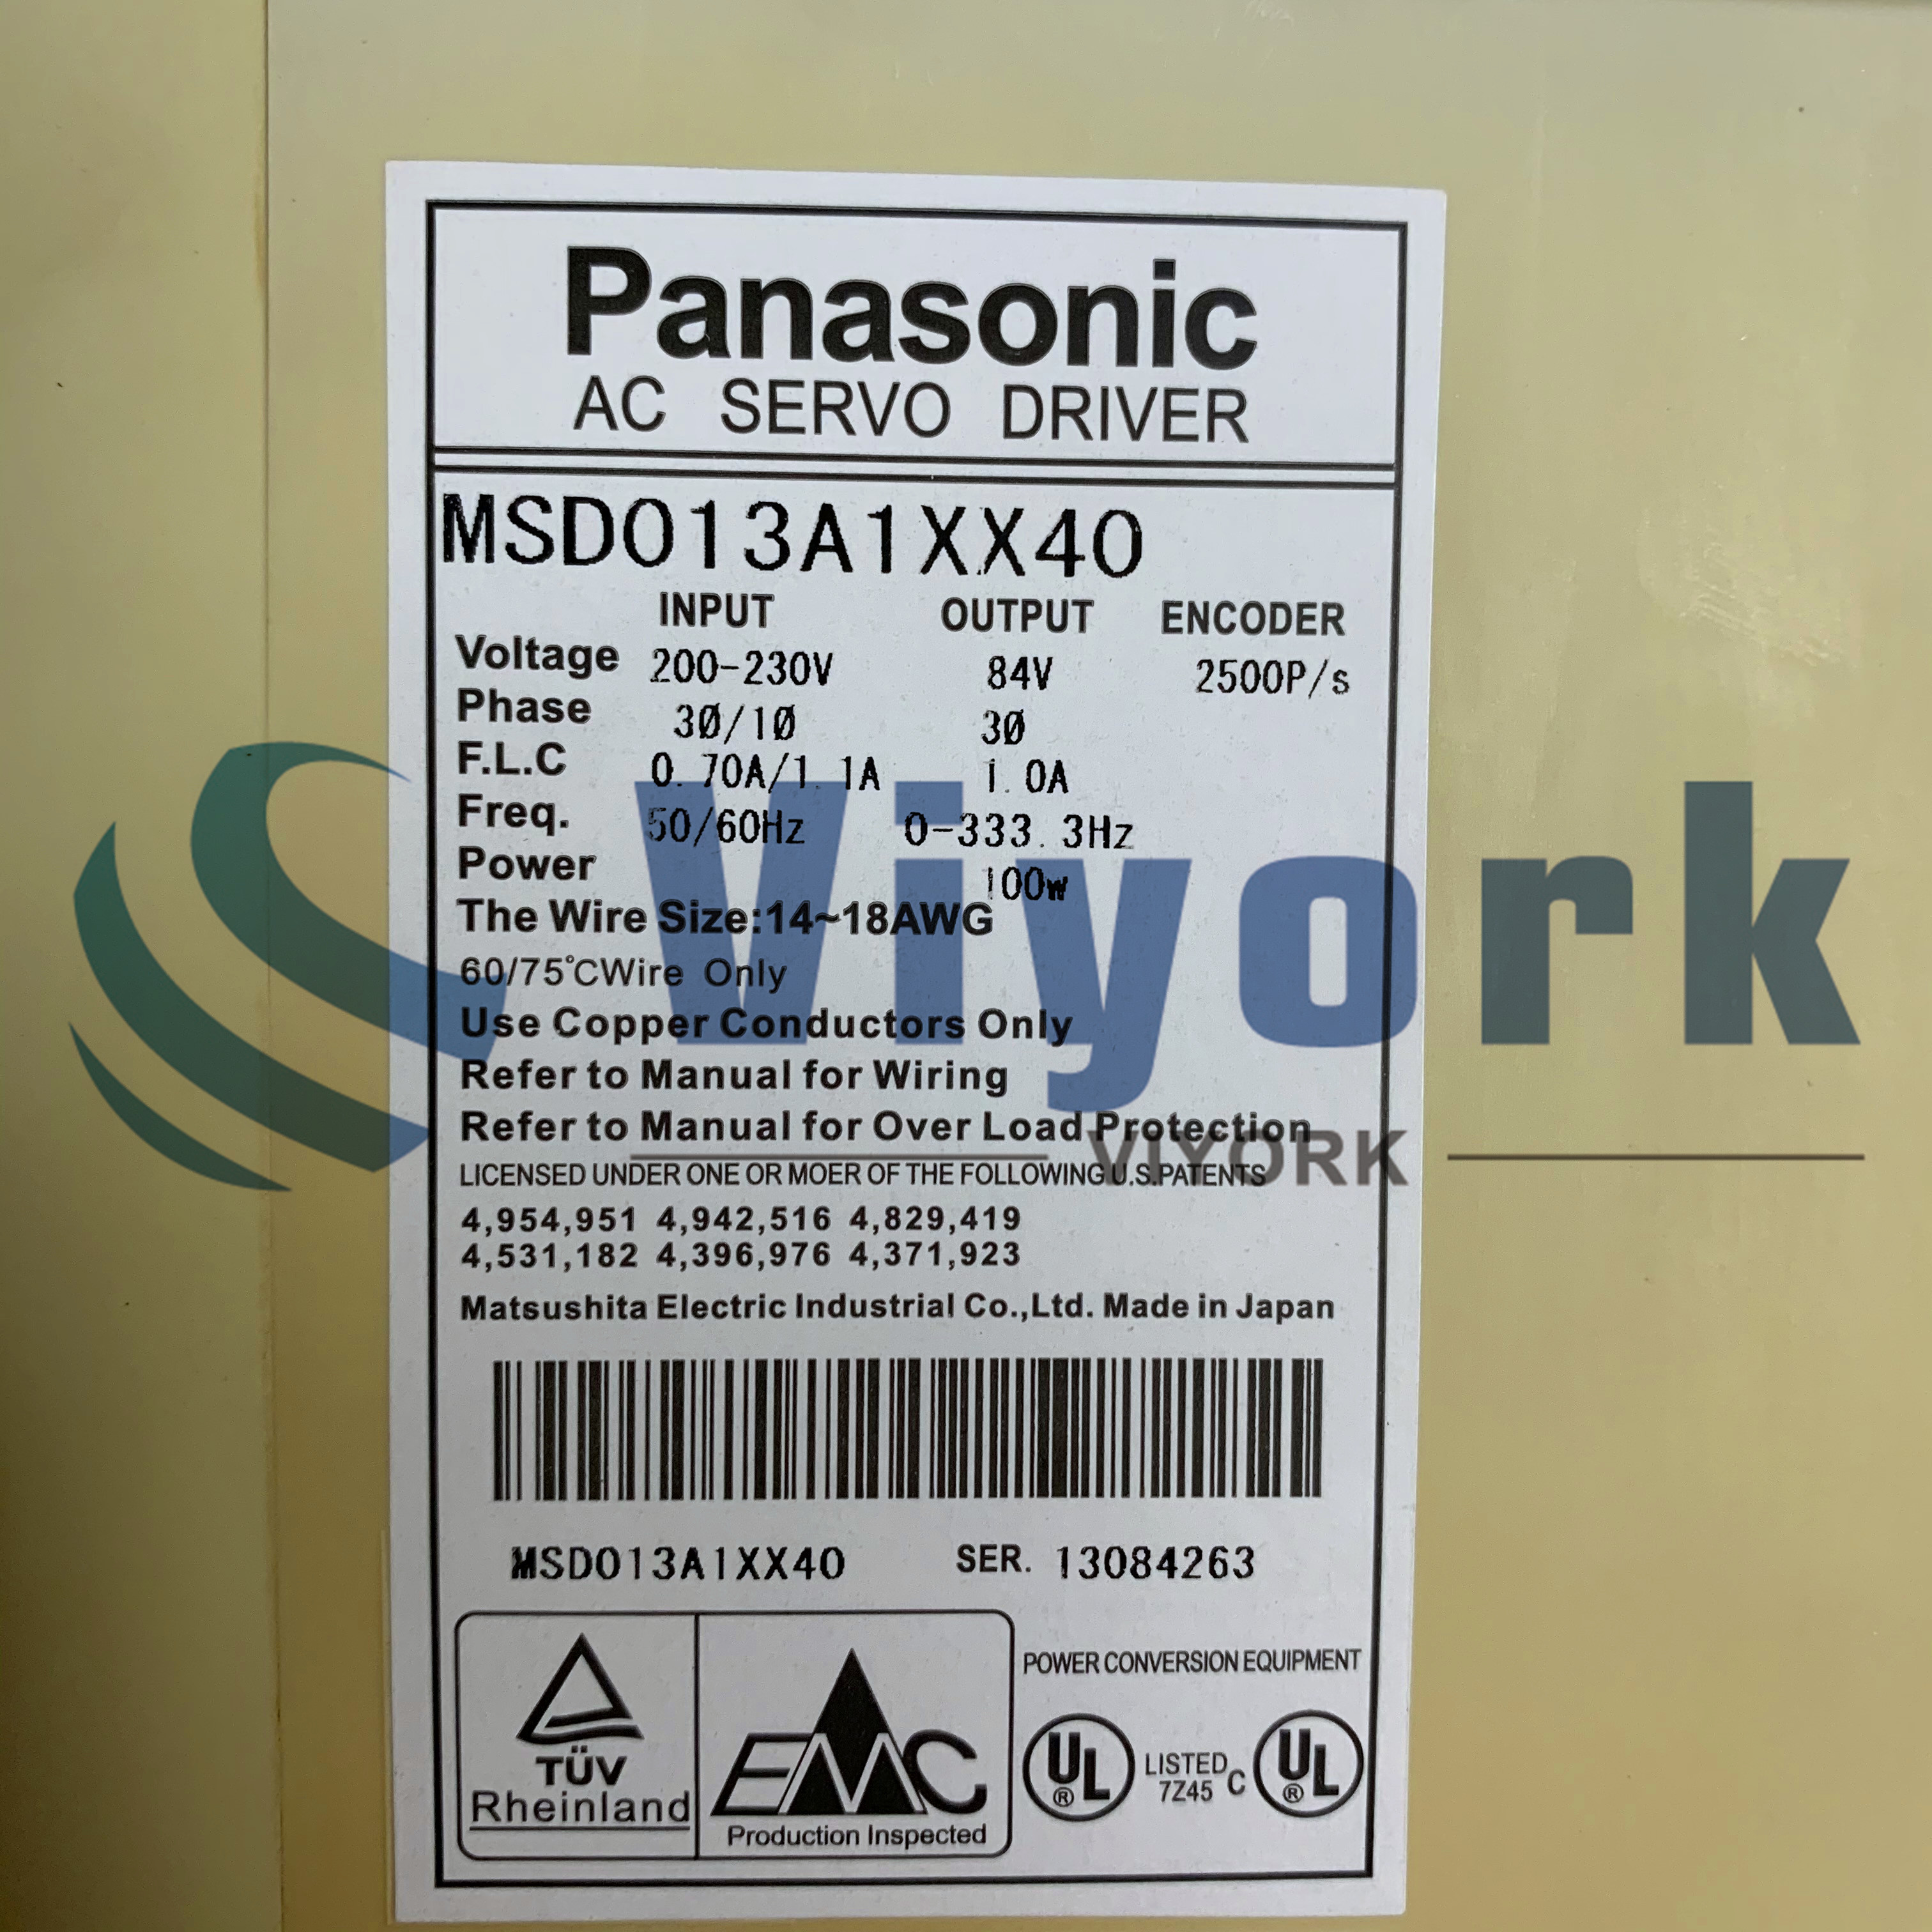 Panasonic MSD013A1XX40 SREVO DRIVE NEW